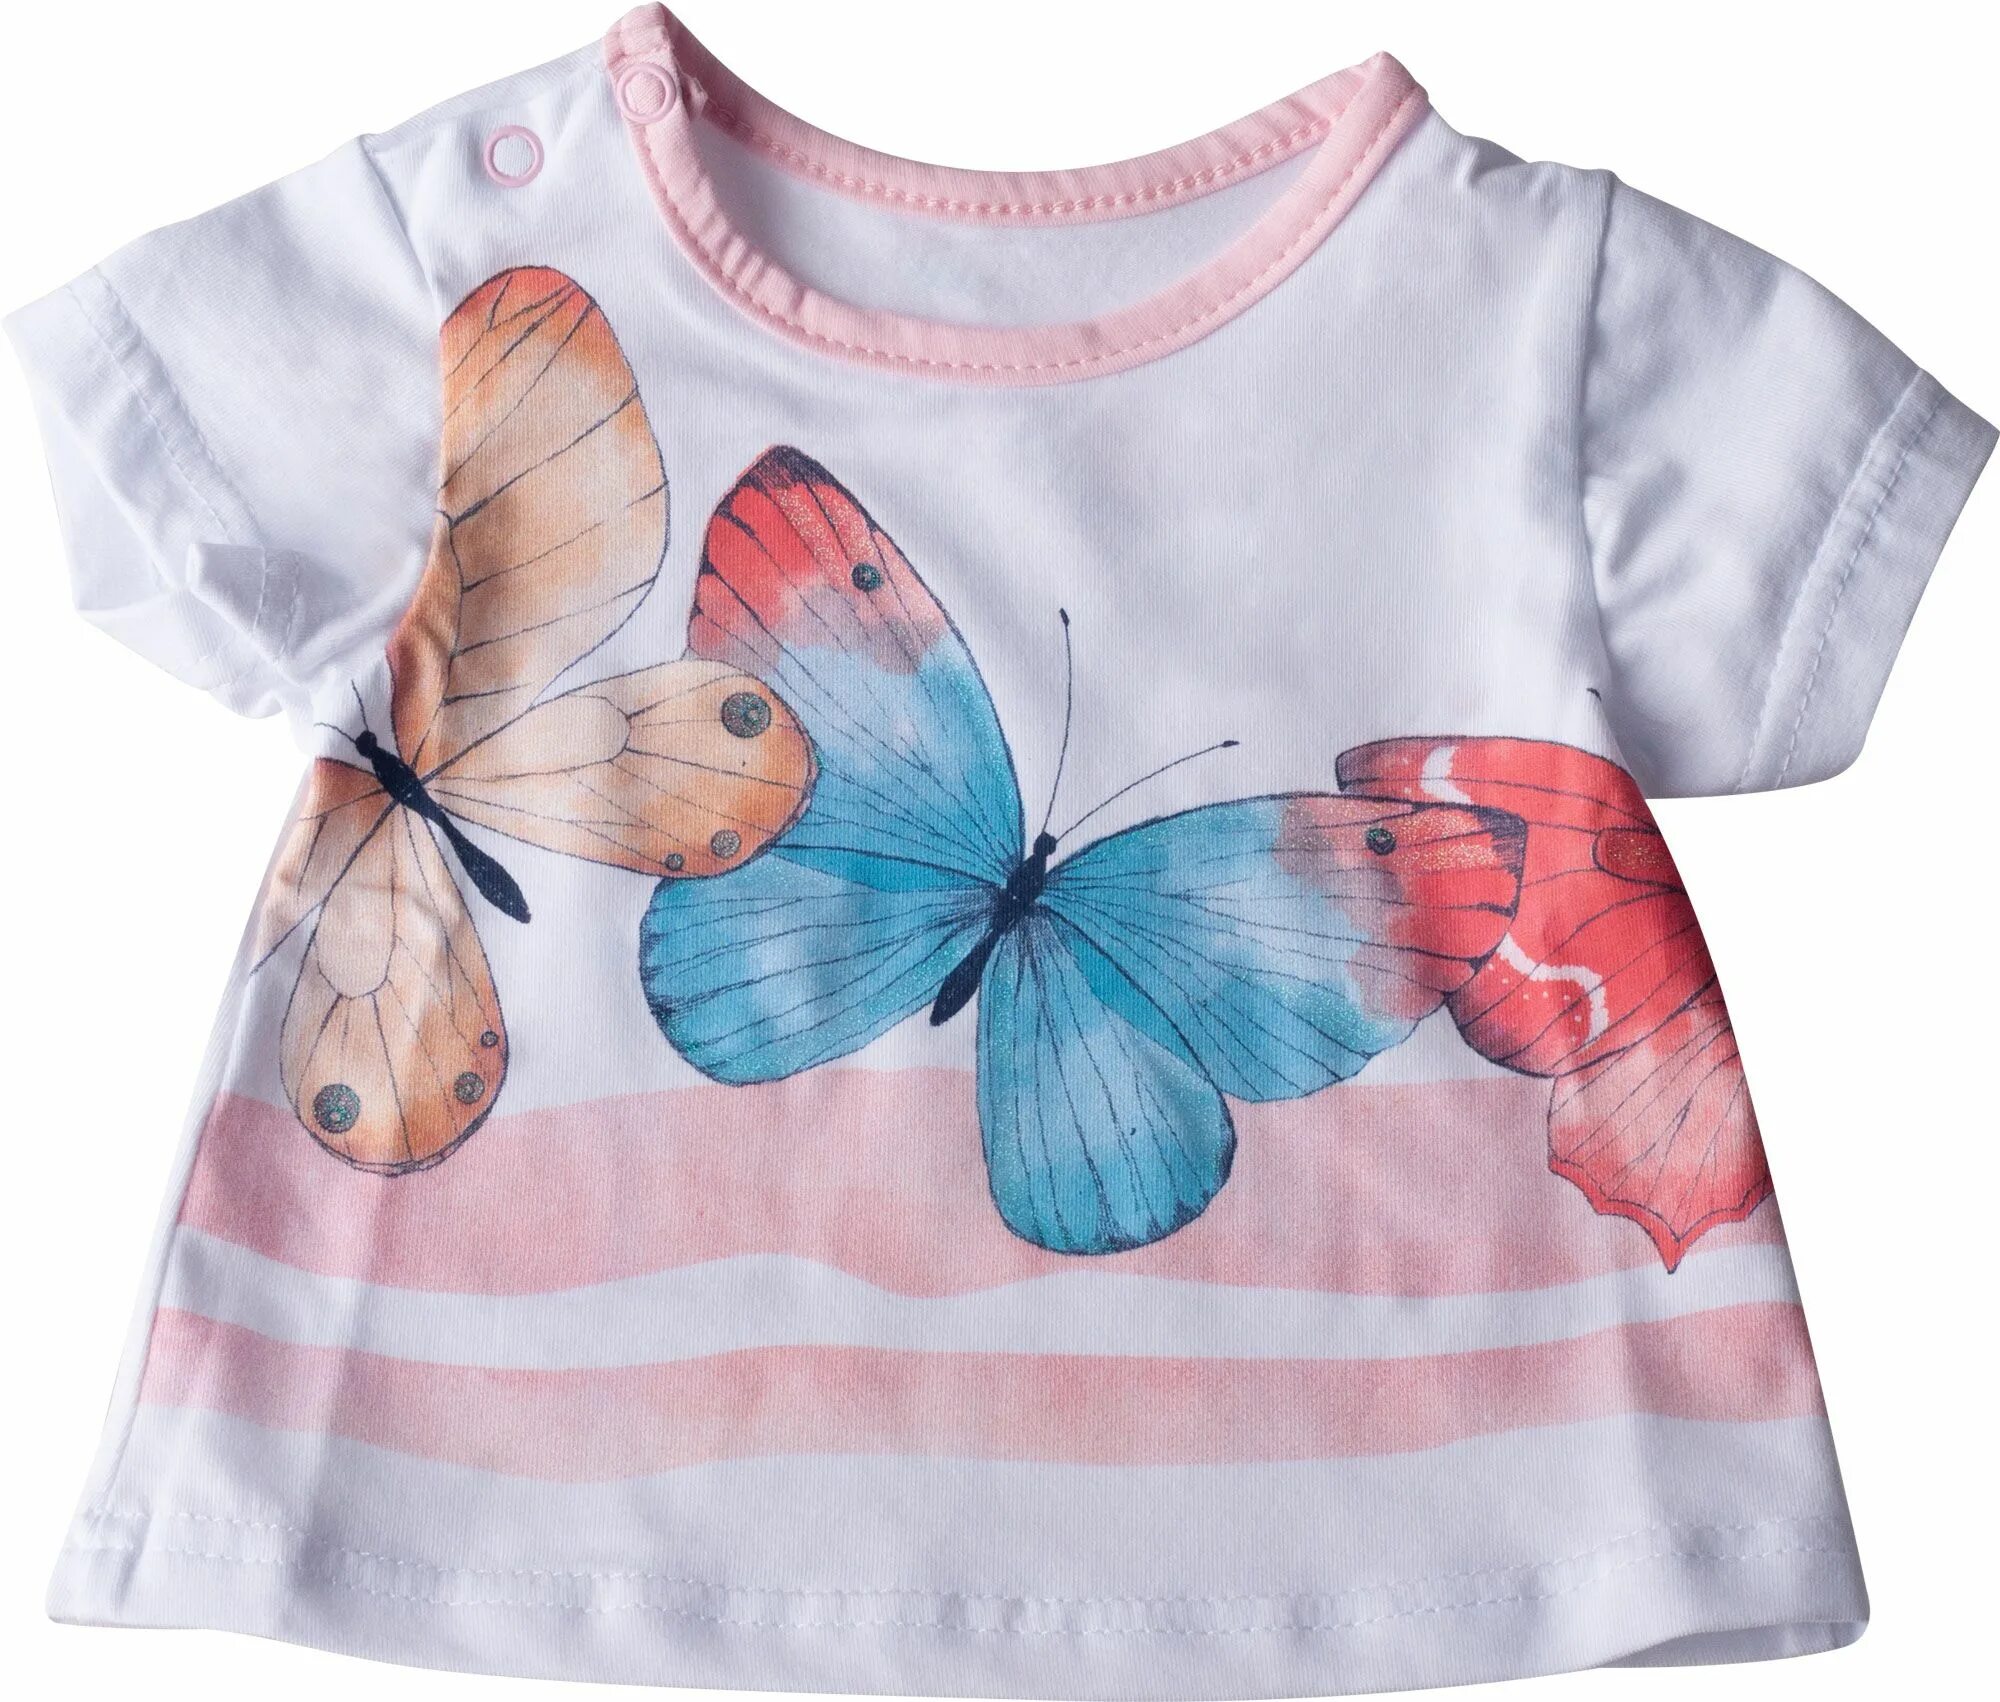 Блузка с бабочками. Кофта с бабочками. Кофточка с бабочкой. Кофта с бабочками для девочки. Блузка бабочка